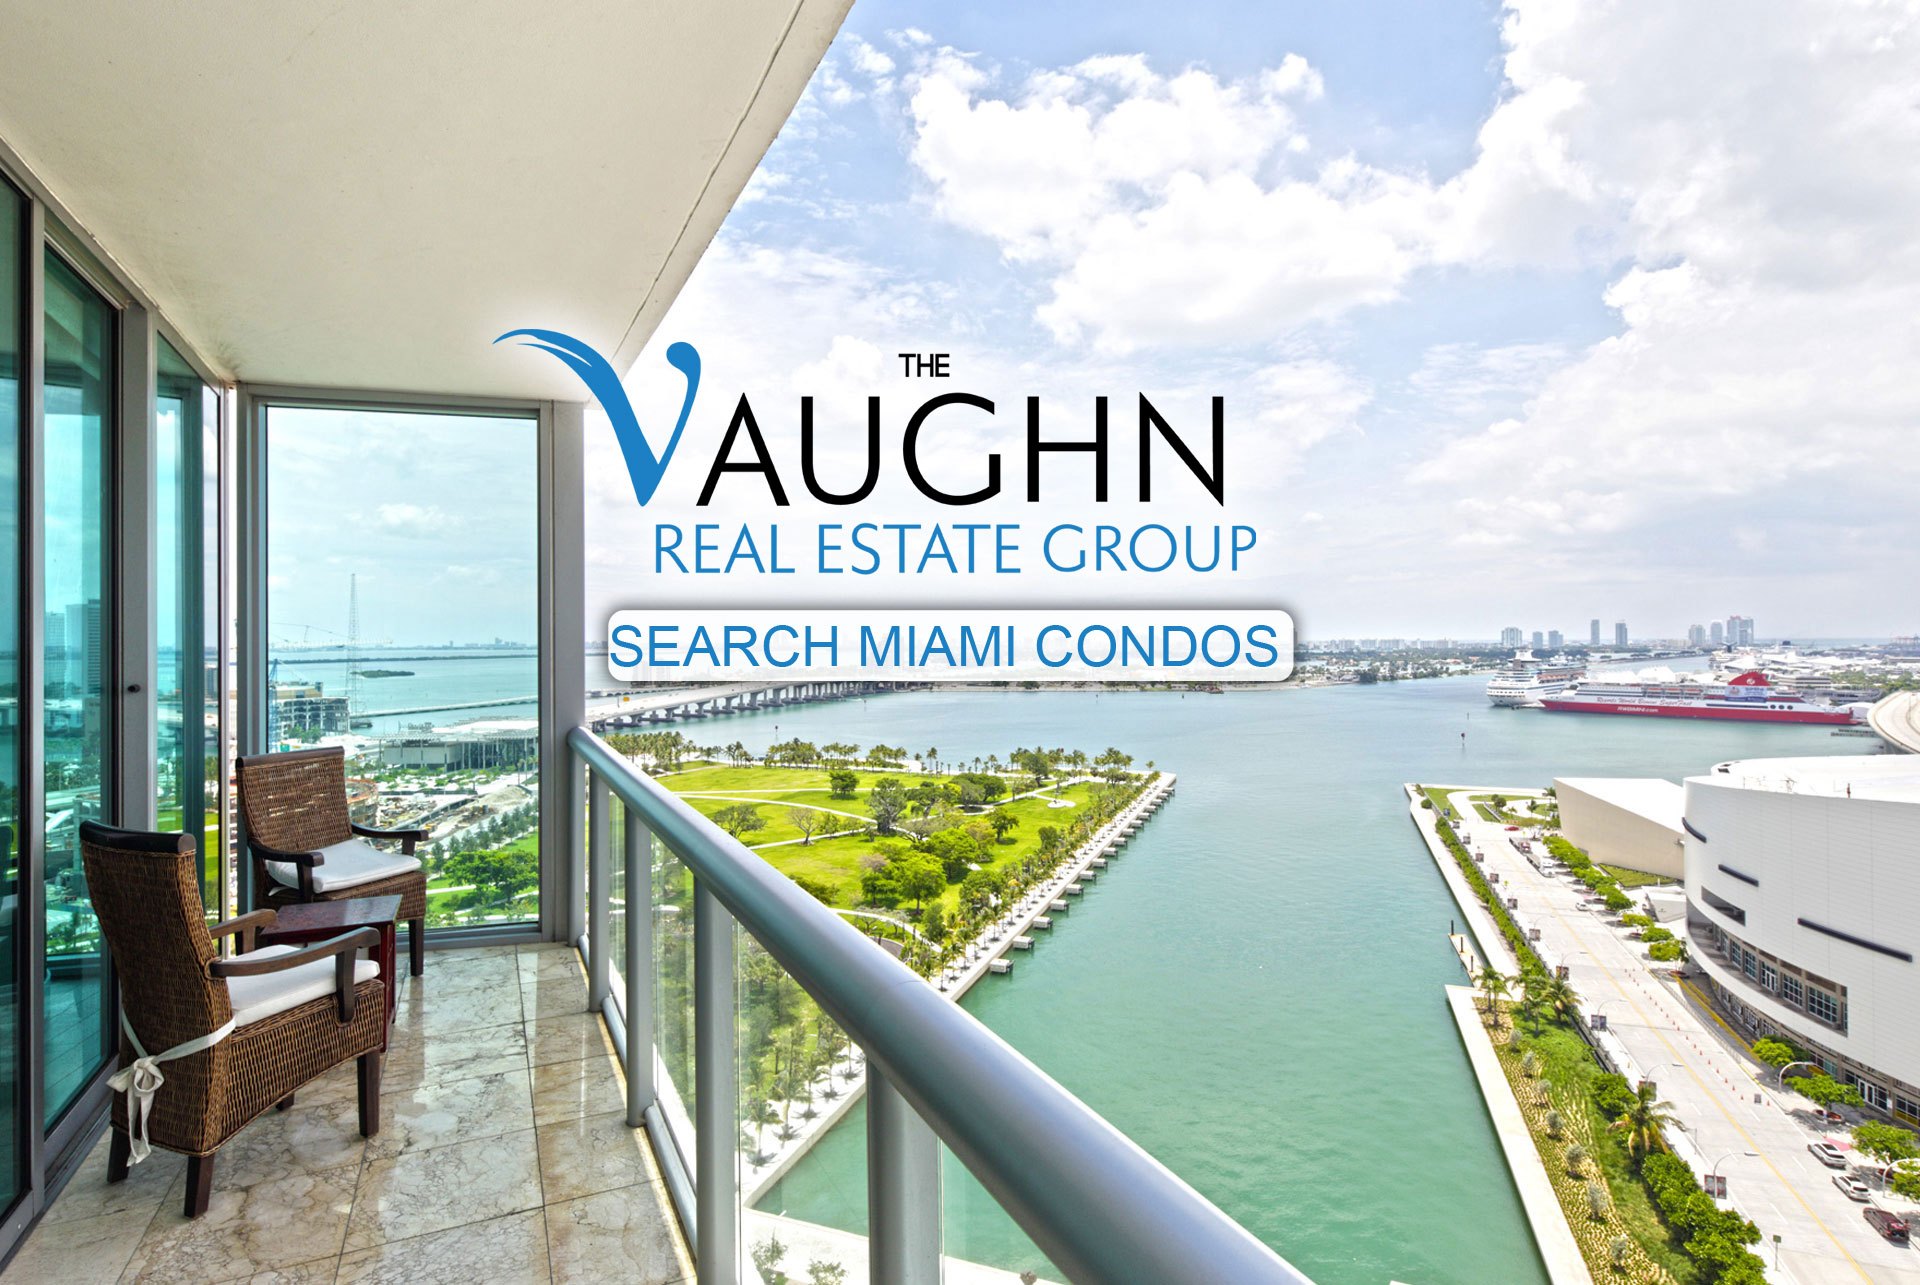 Search Miami Condos right now in Miami Beach, Bal Harbour.